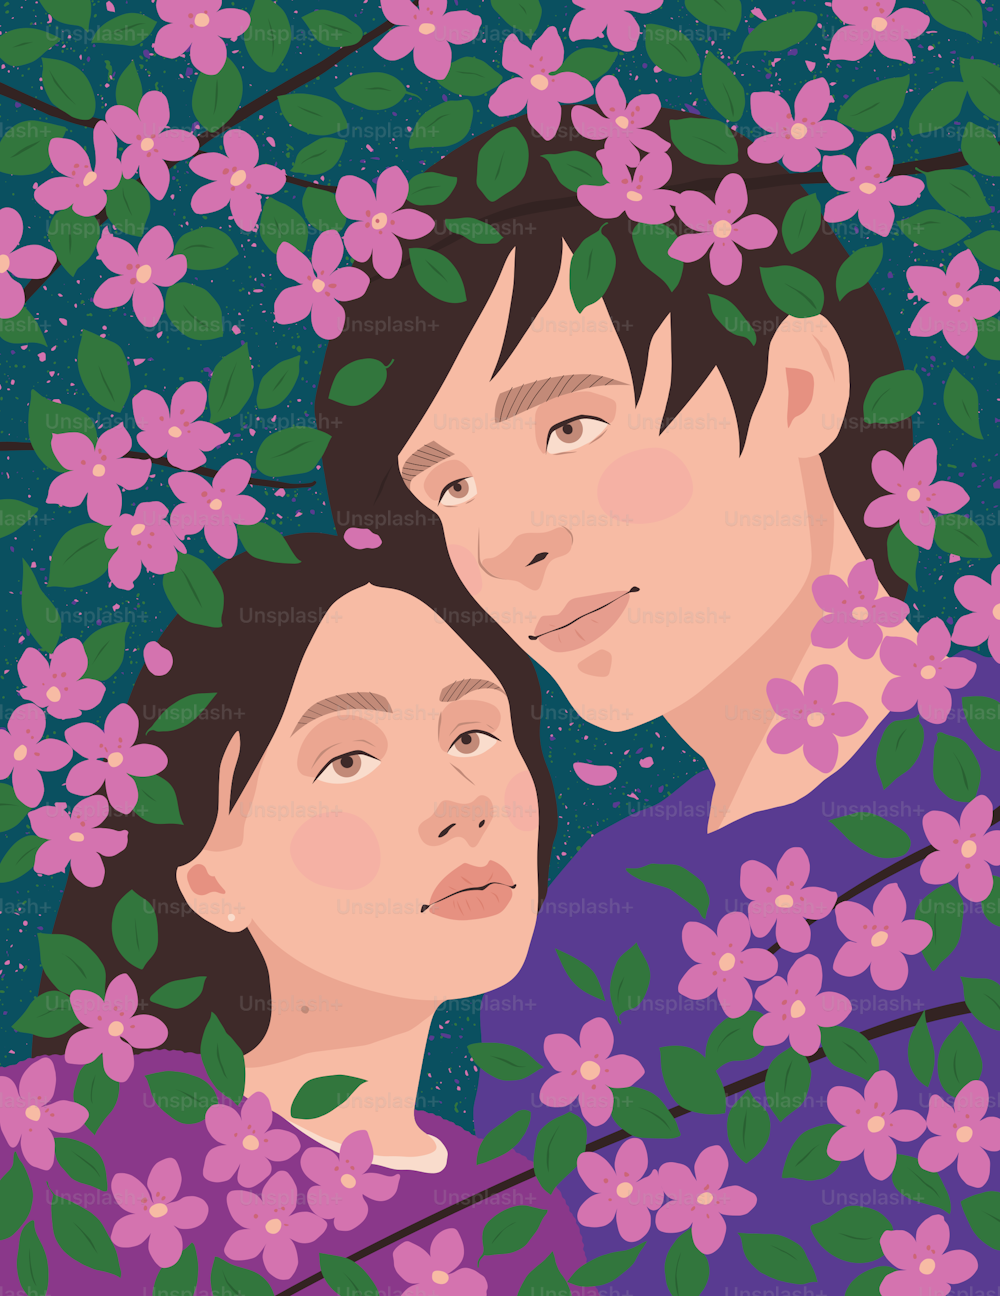 꽃에 둘러싸인 두 사람의 그림